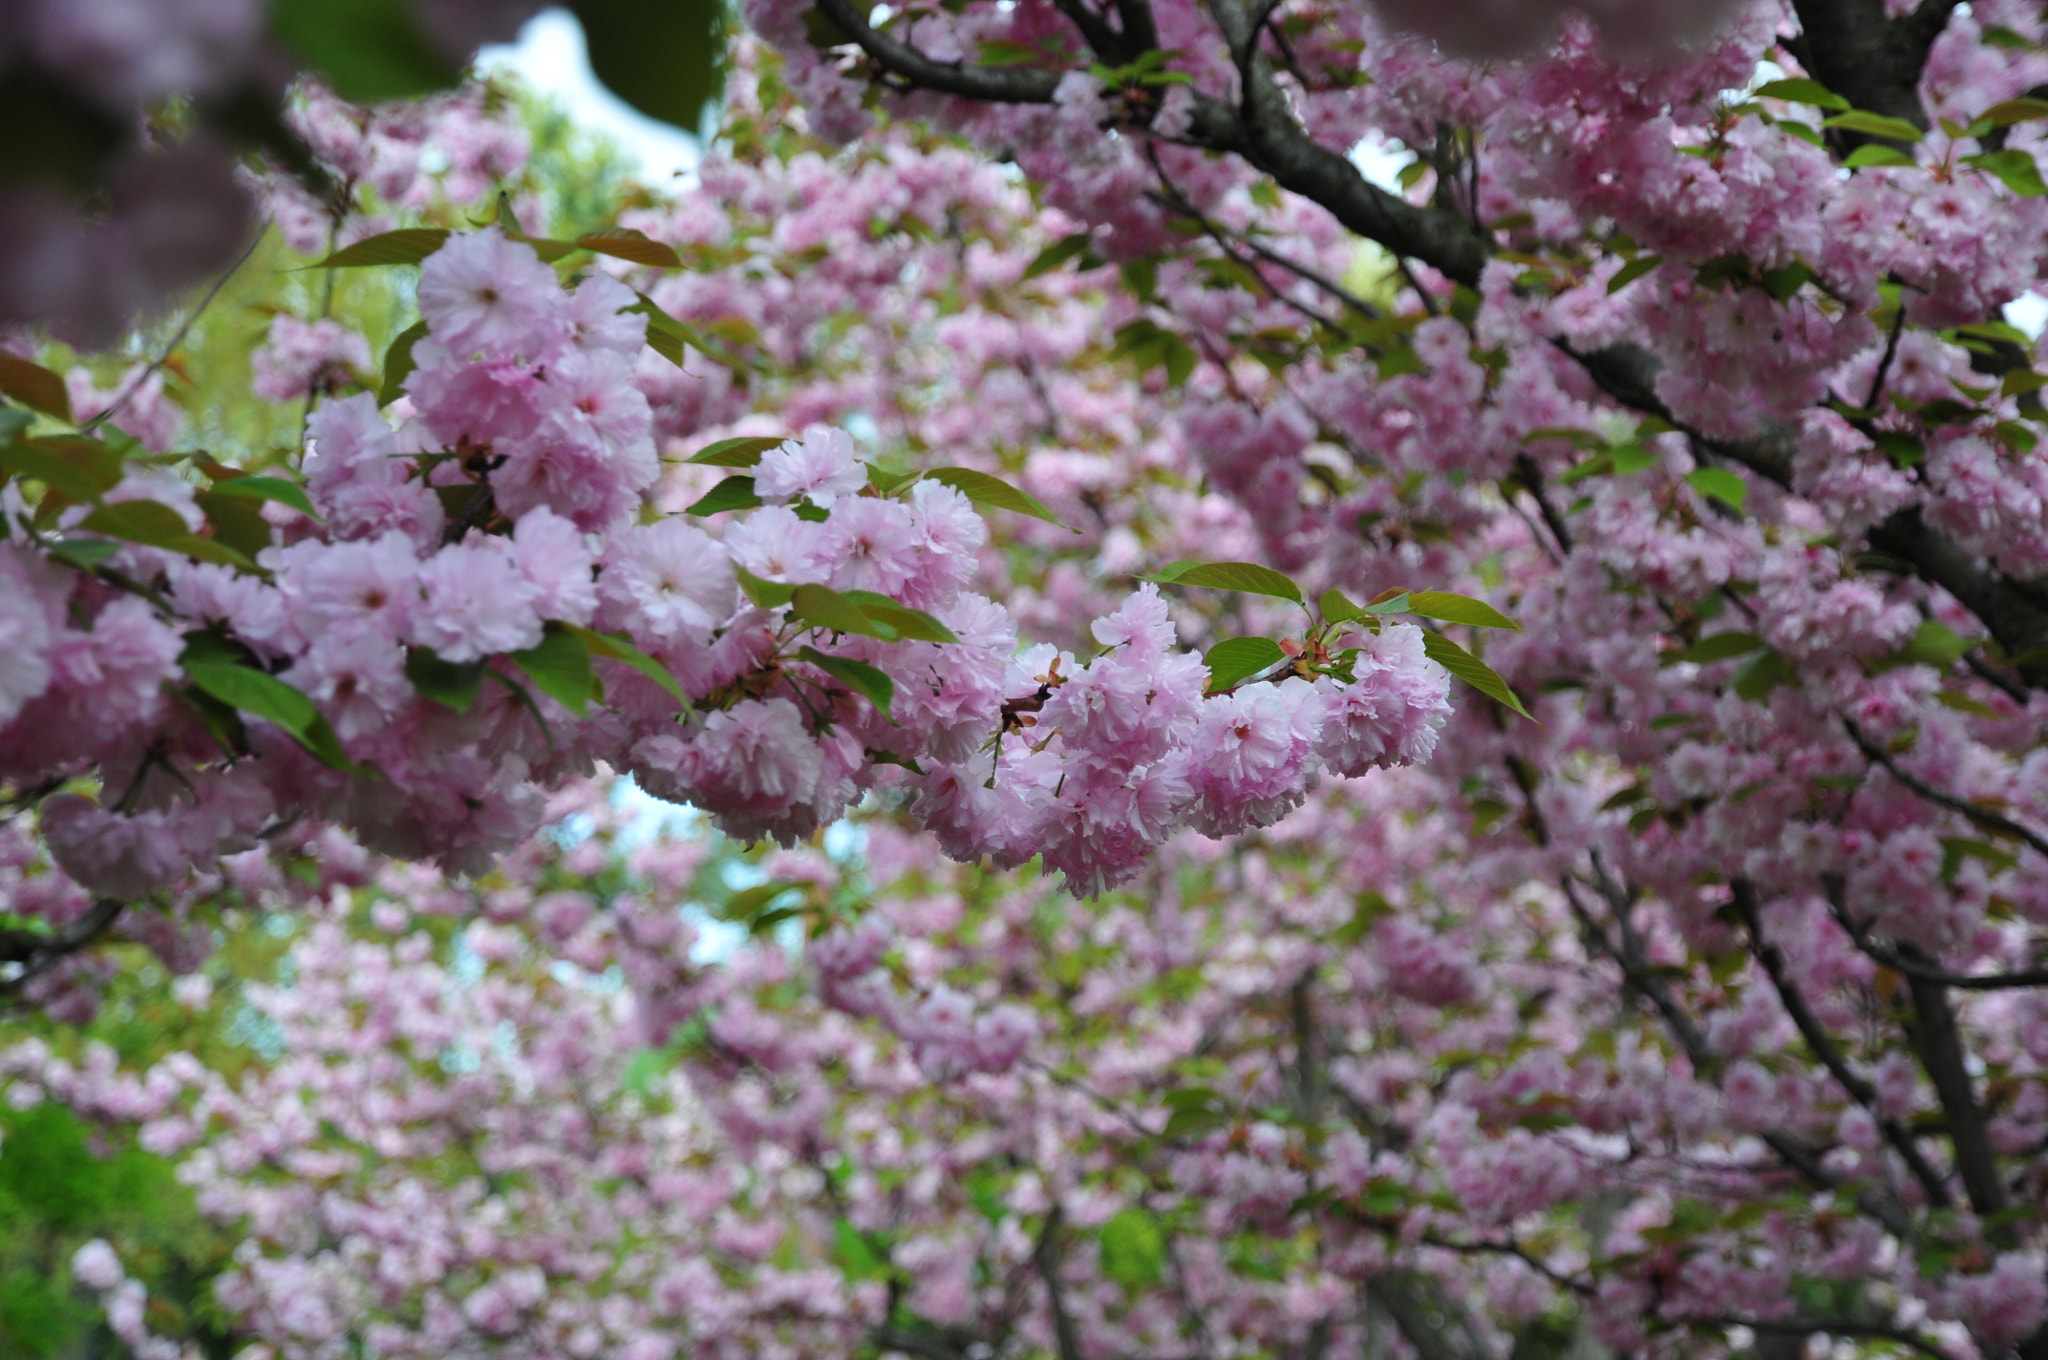 Nikon AF-S DX Nikkor 16-85mm F3.5-5.6G ED VR sample photo. Cherry blossom photography